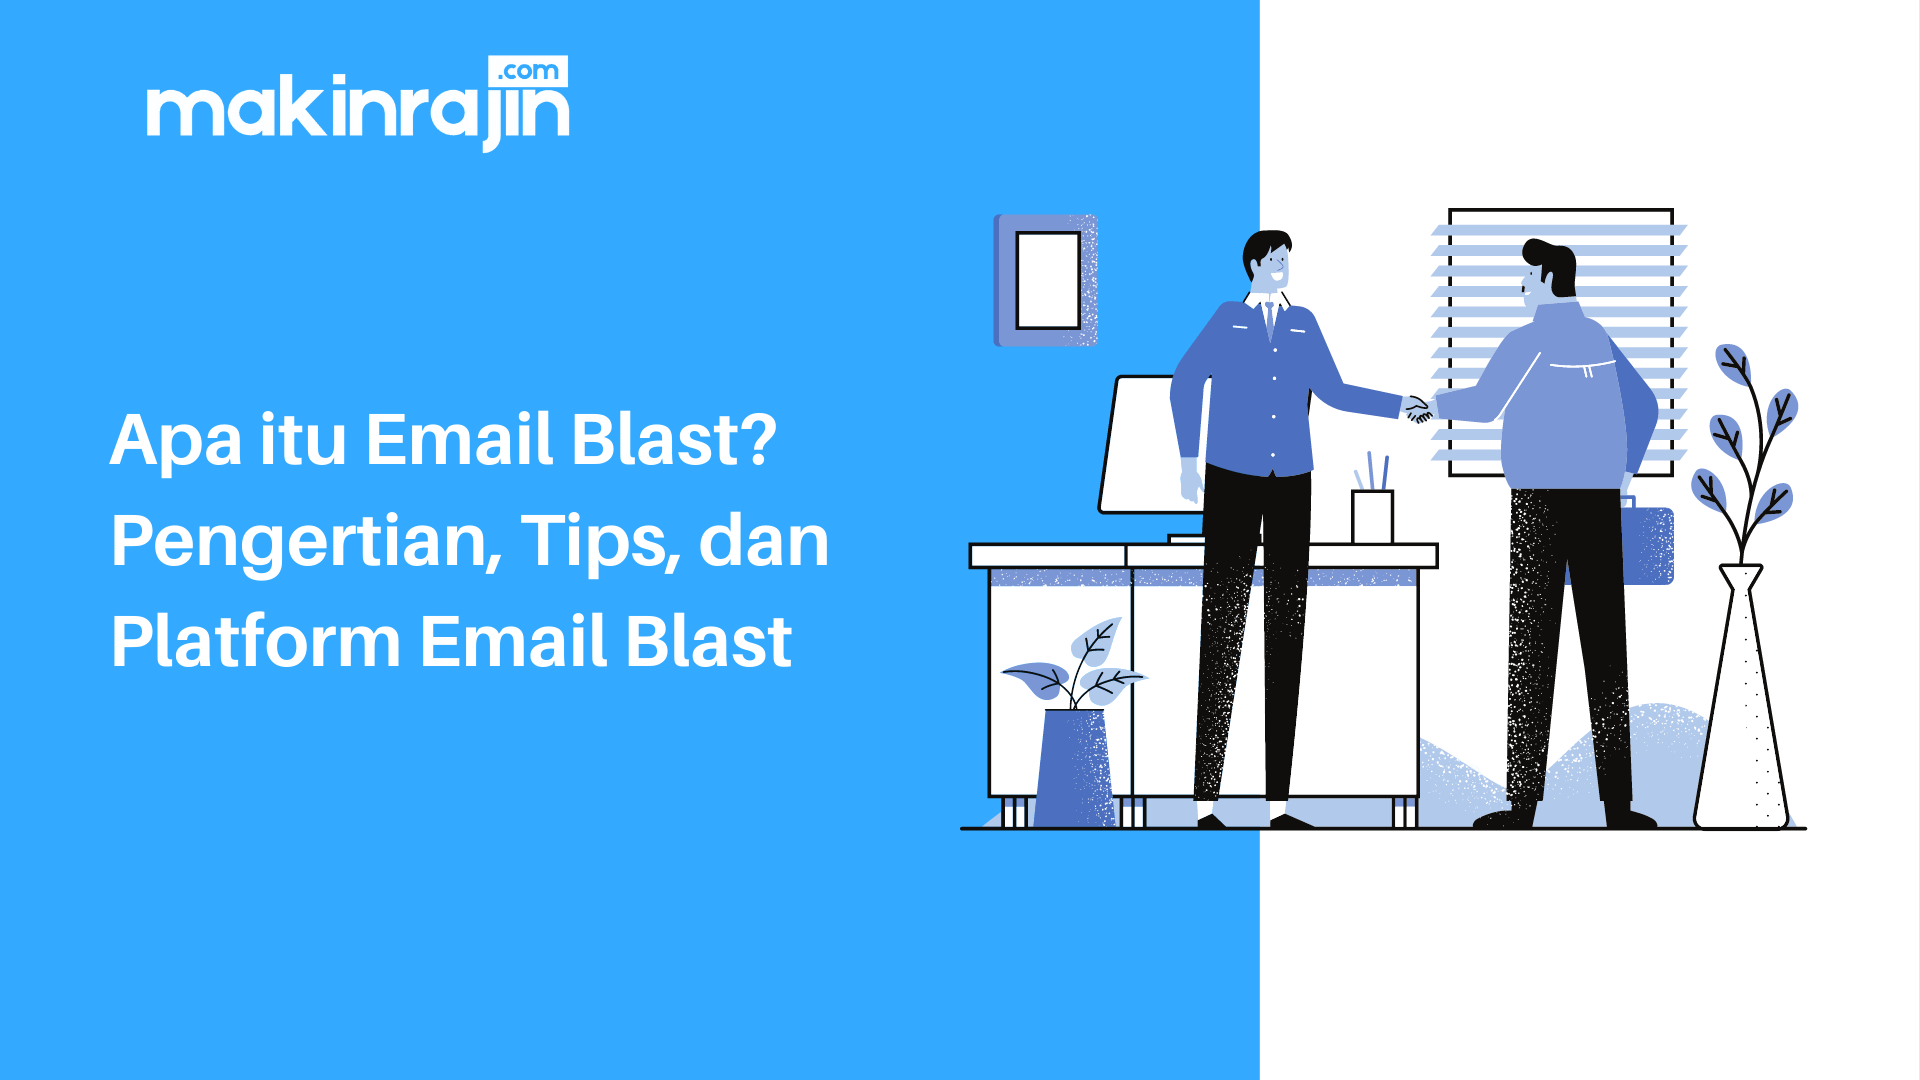 Apa itu Email Blast Pengertian, Tips, dan Platform Email Blast